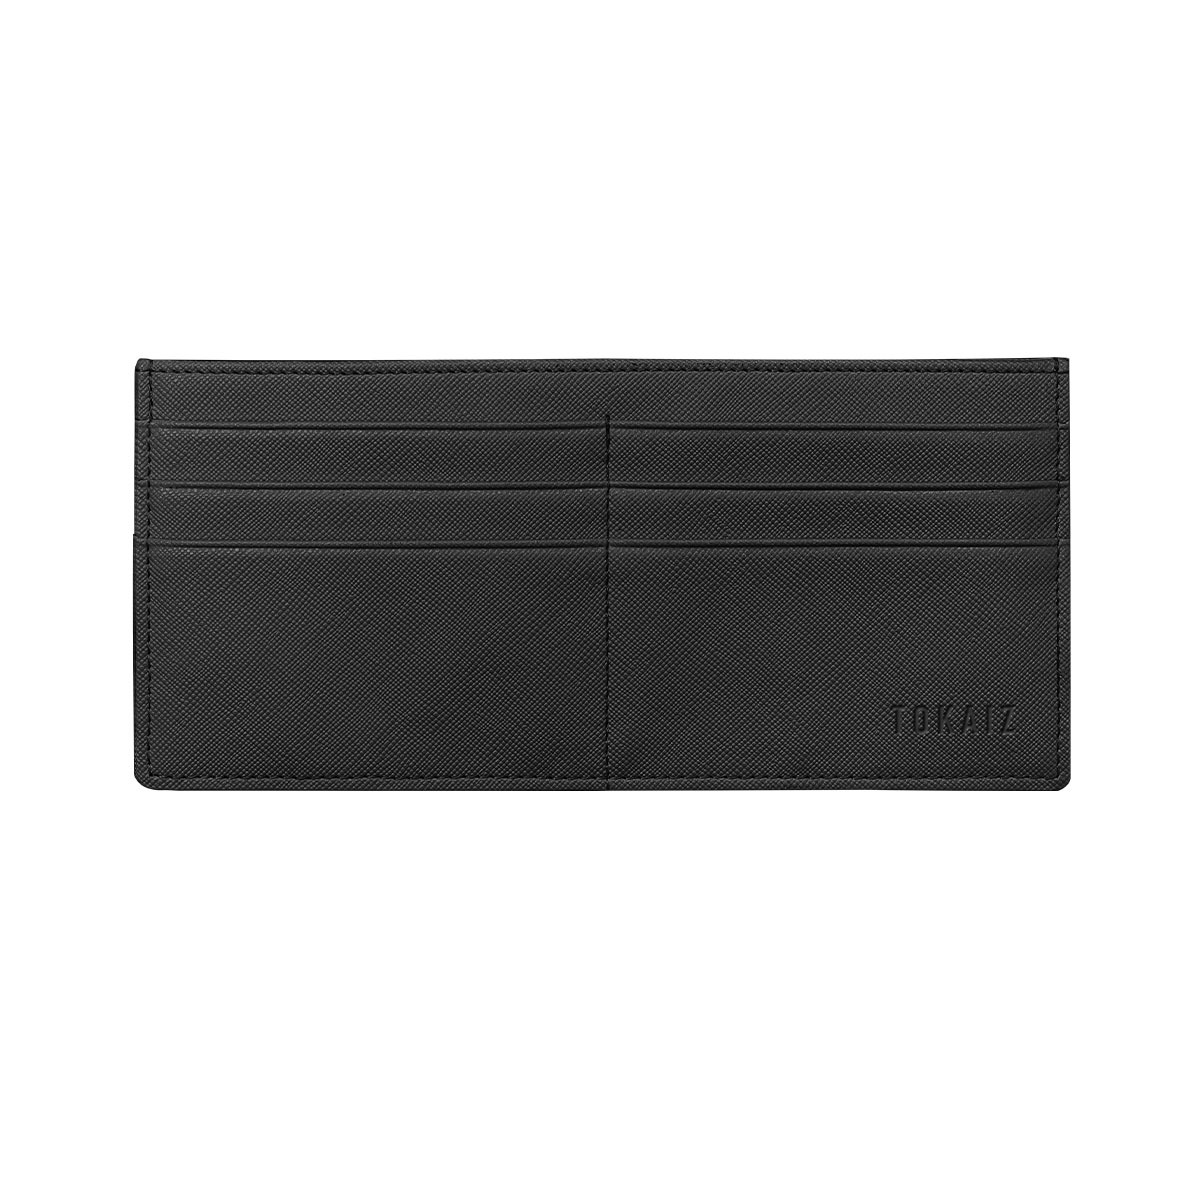 薄型長財布 レディース 薄い スキミング防止 ブランド 使いやすい 大容量 薄型 軽量 カードケース...